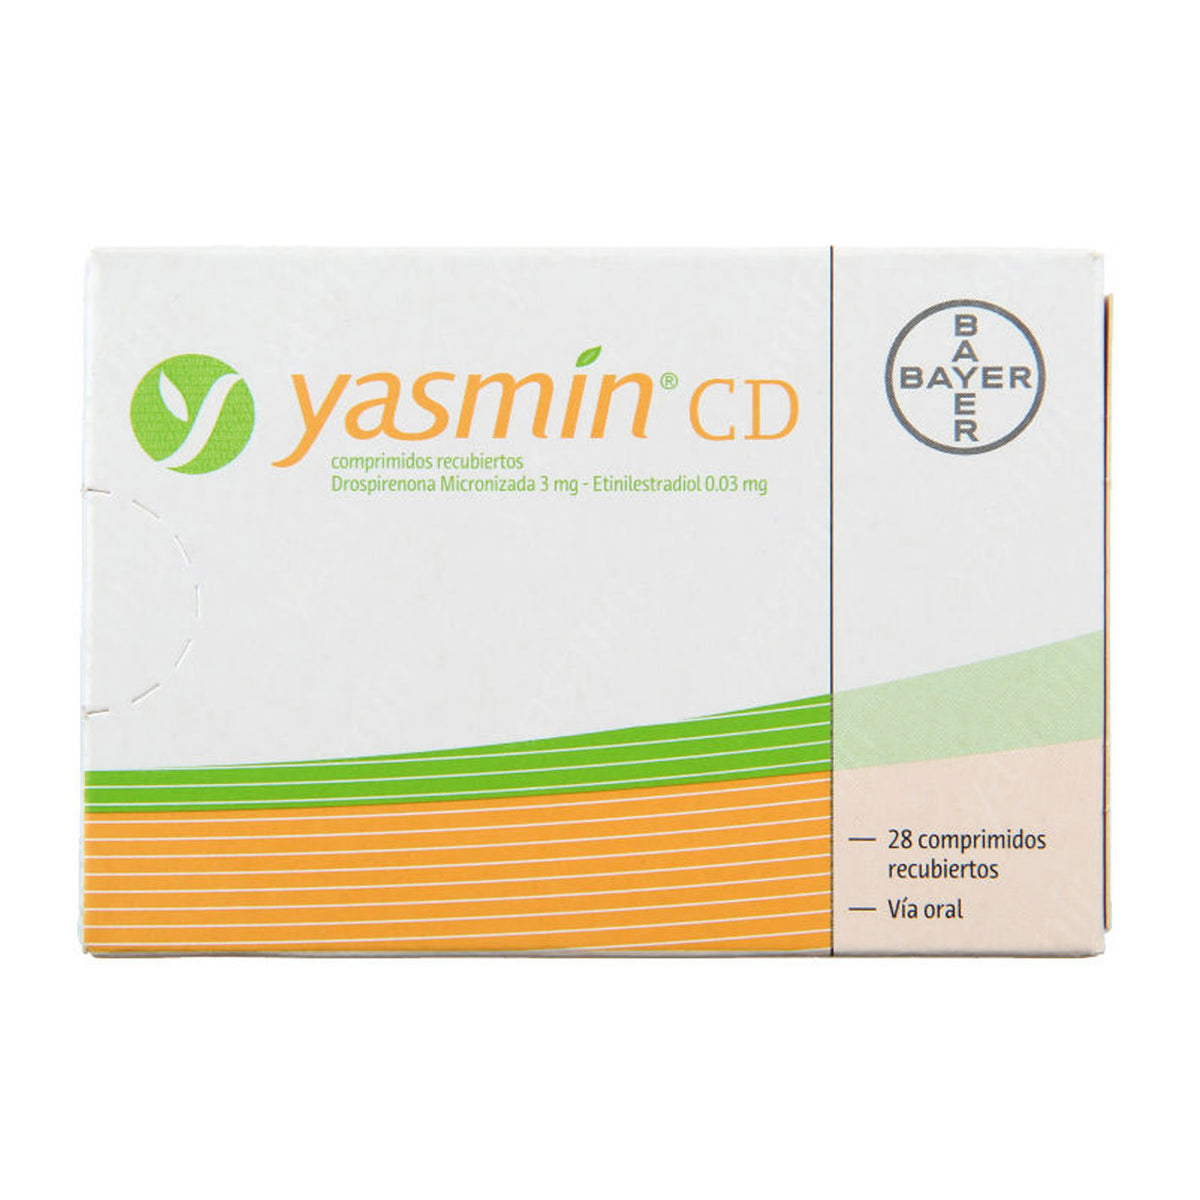 Yasmin CD Comprimidos Recubiertos